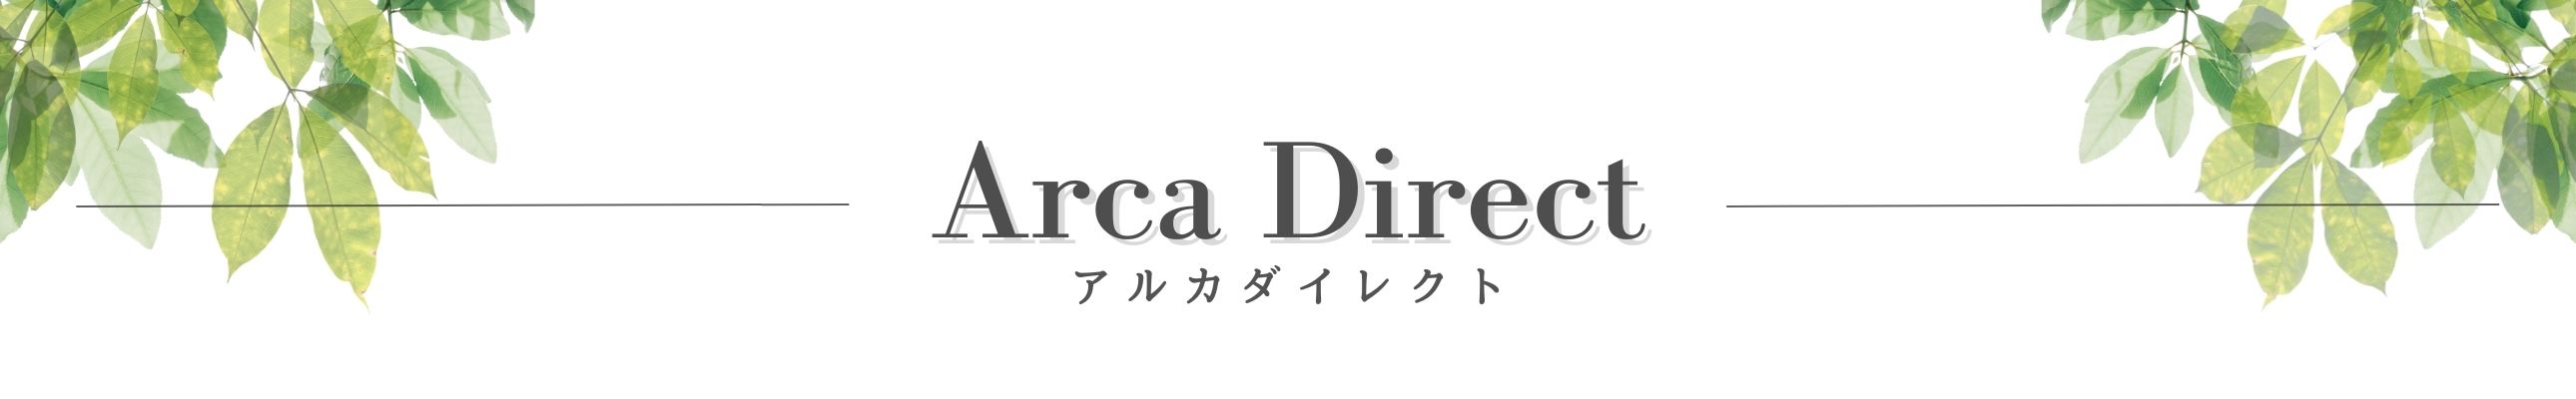 Arca Direct アルカダイレクト ヘッダー画像